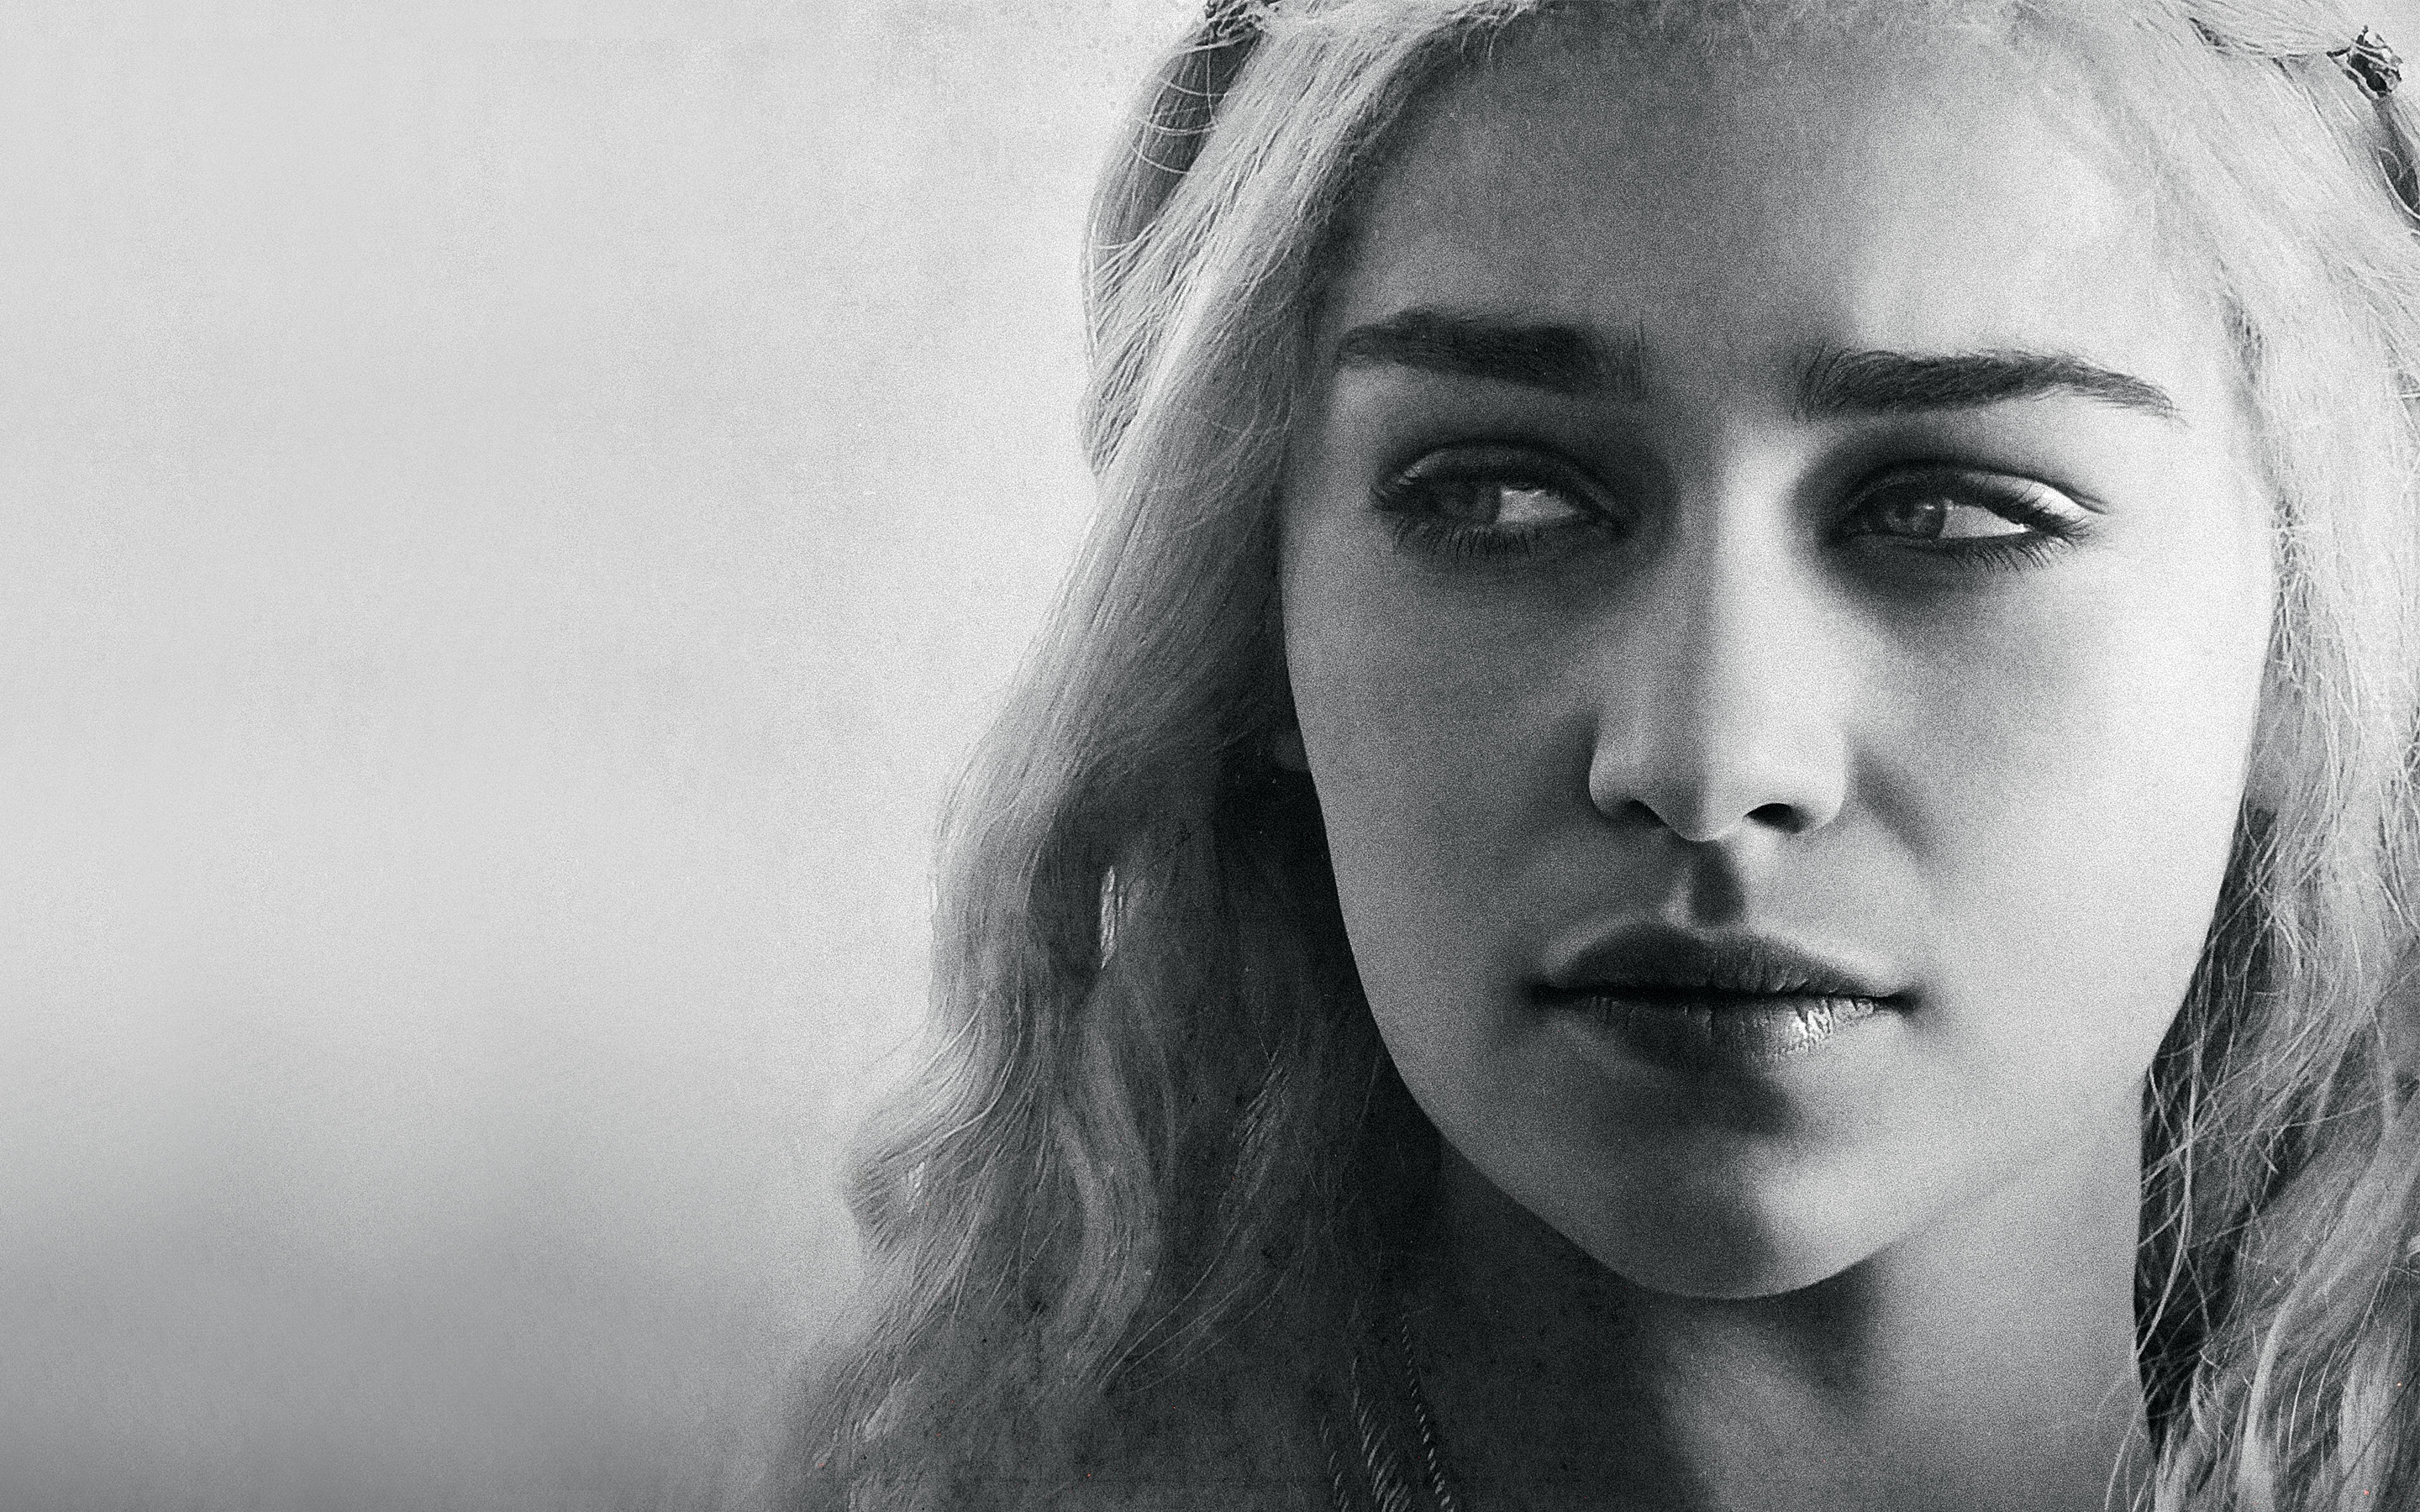 Daenerys Targaryen Emilia Clarke Wallpapers HD Wallpapers